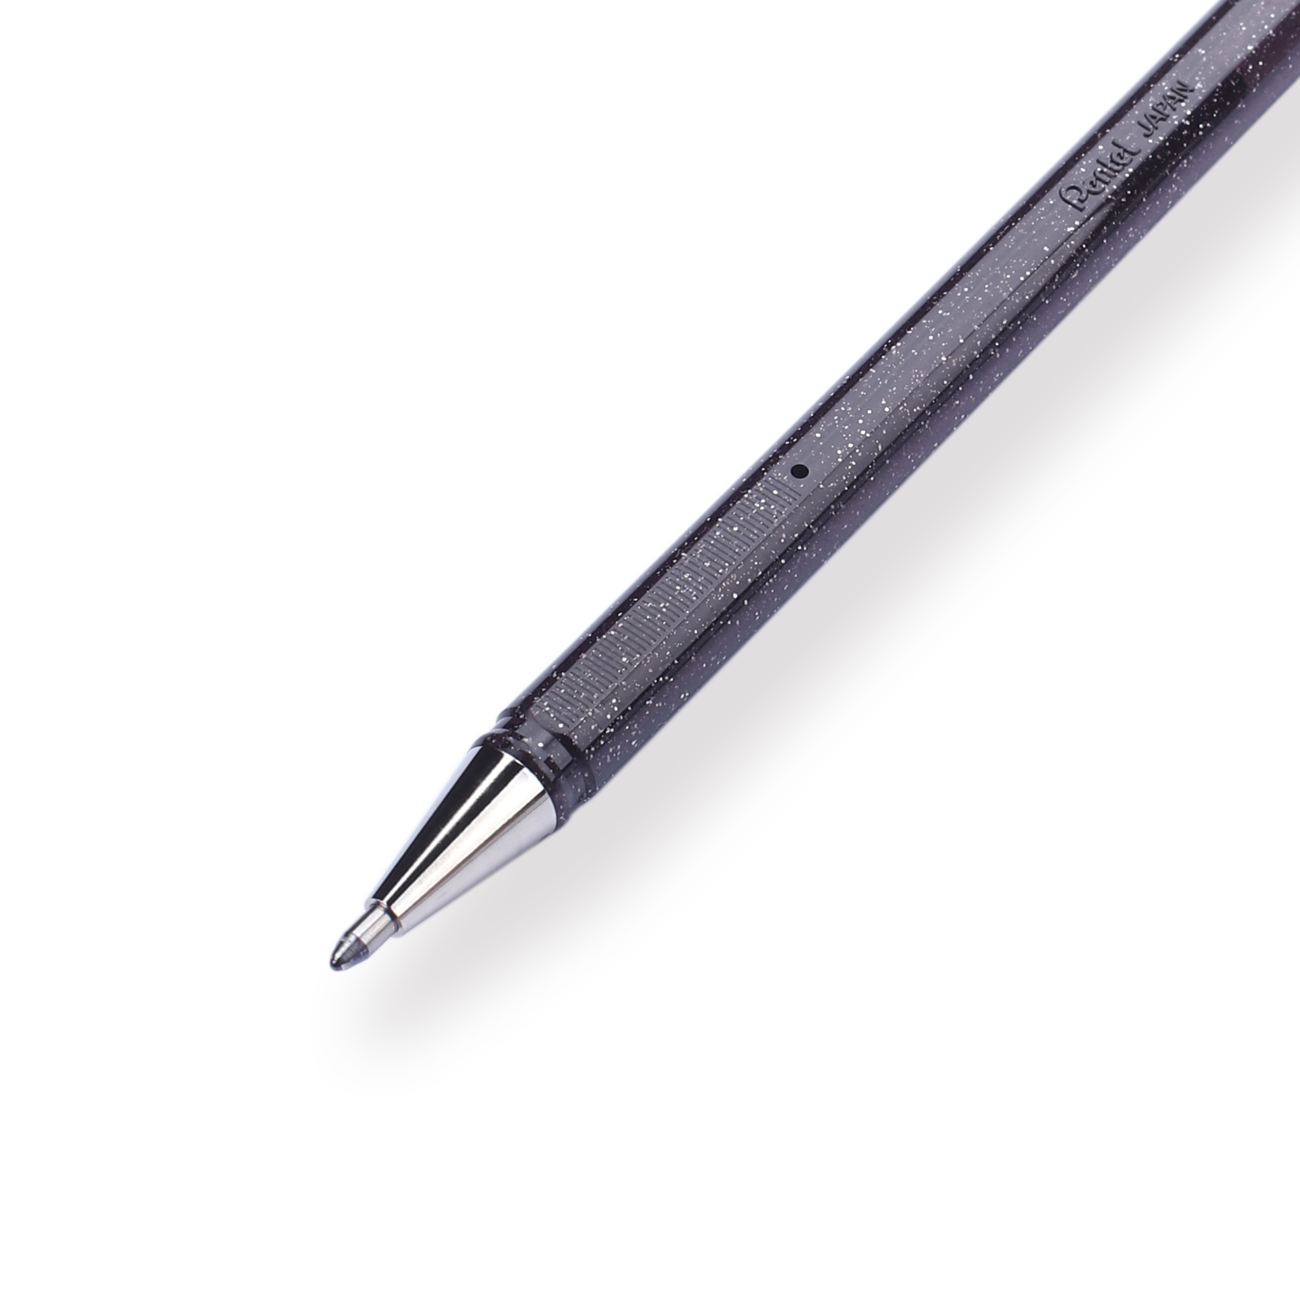 Pentel Hybrid Dual Metallic Gel Pen 1.0mm - Black + Metallic Red